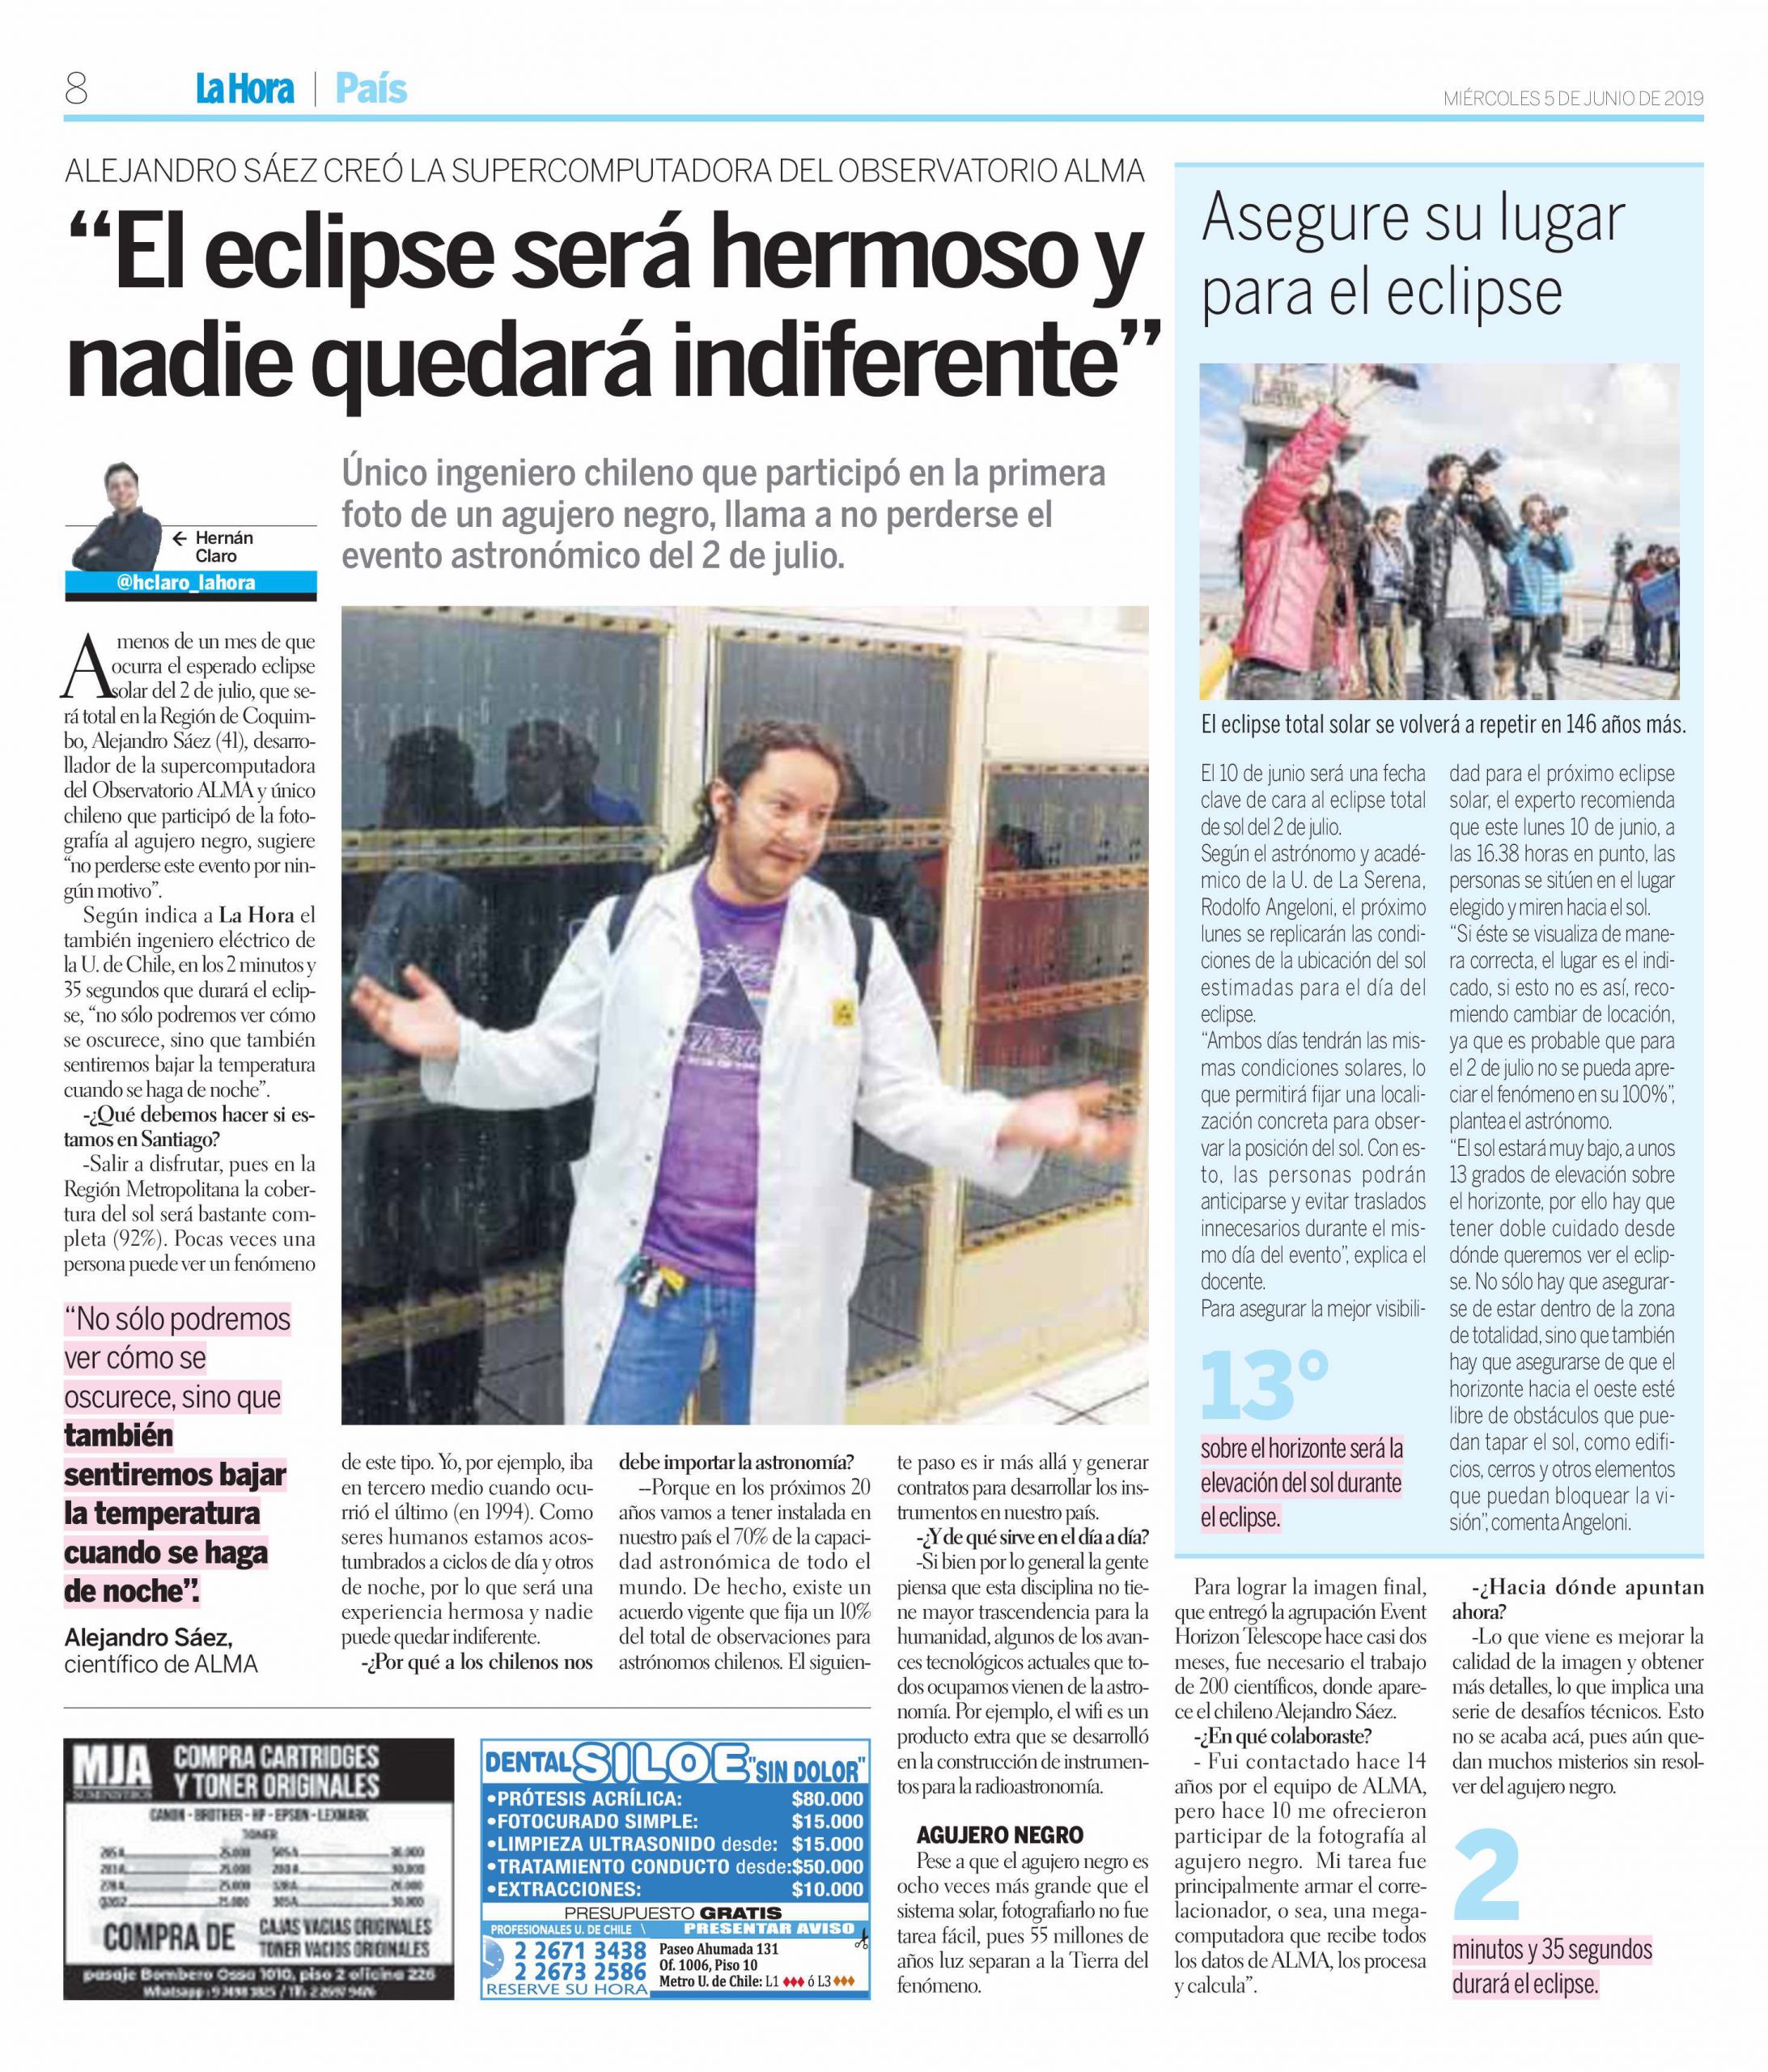 [Diario La Hora] Astrónomo ULS comenta cómo se verá el Eclipse2019 en Santiago